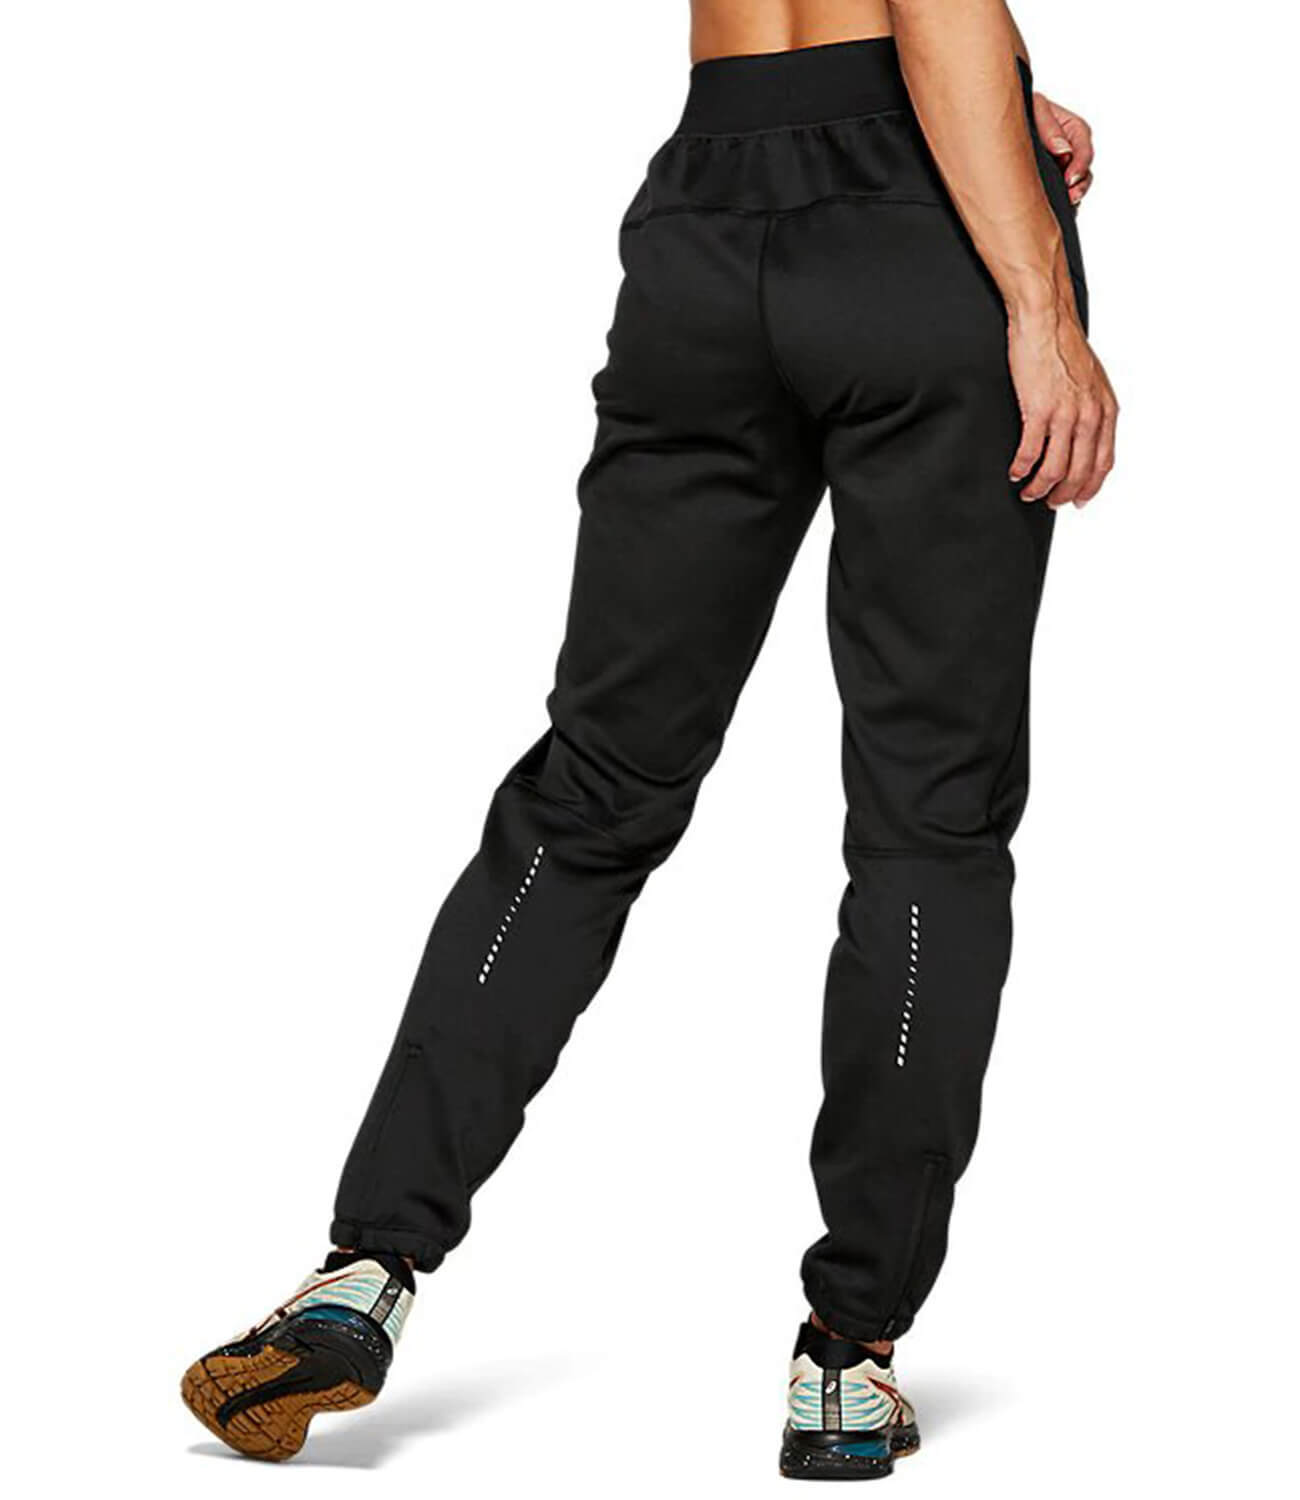 Женские утепленные брюки Asics Winter Accelerate Pant 2012A438 001 винтернет-магазине Five-sport с доставкой по Москве и РФ